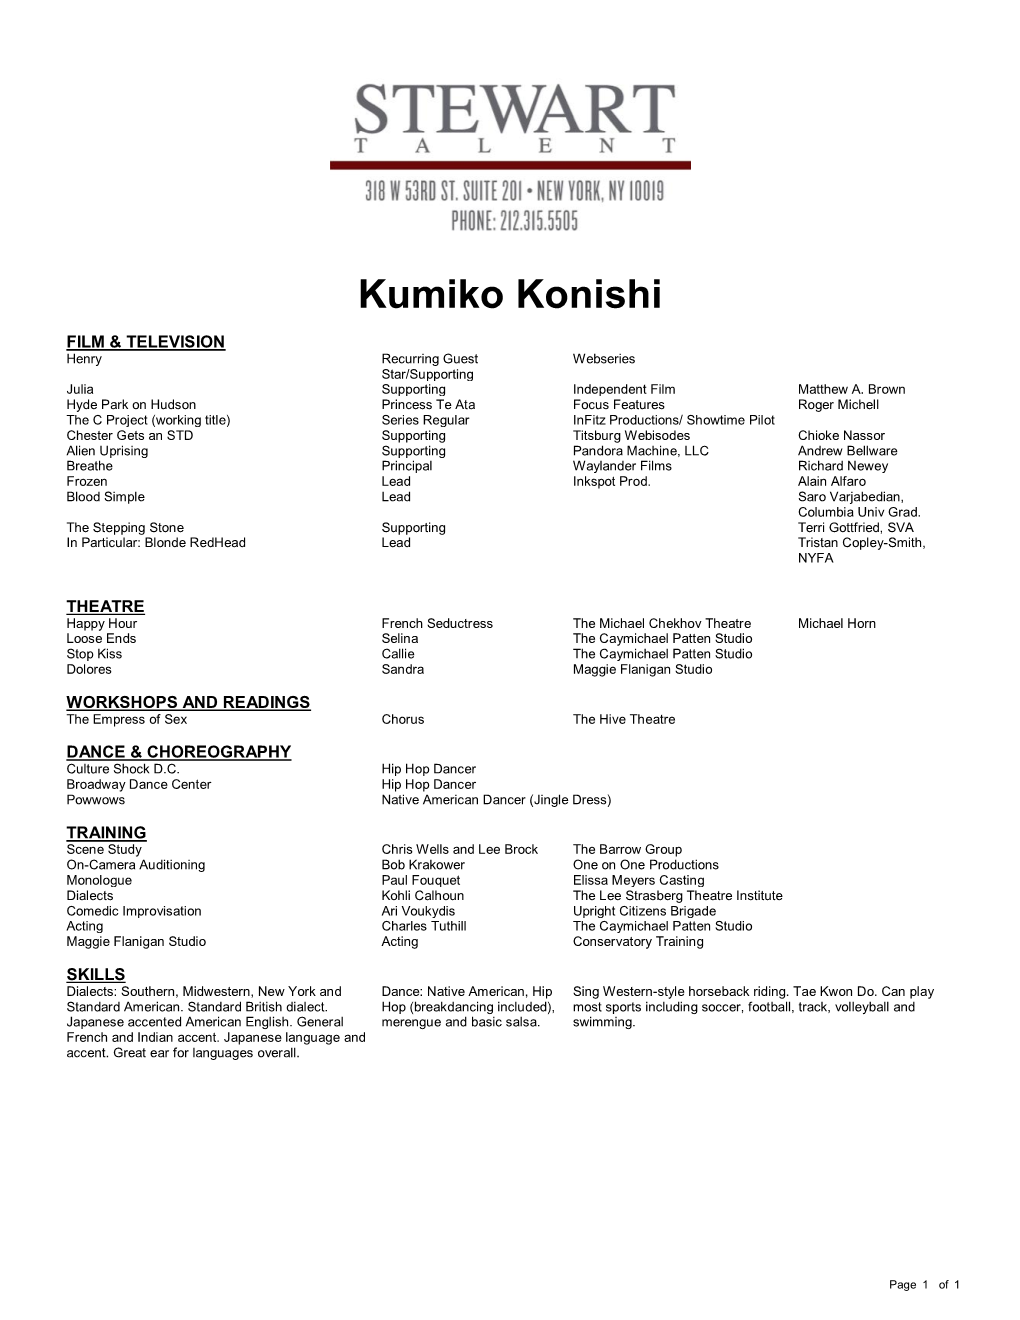 Kumiko Konishi